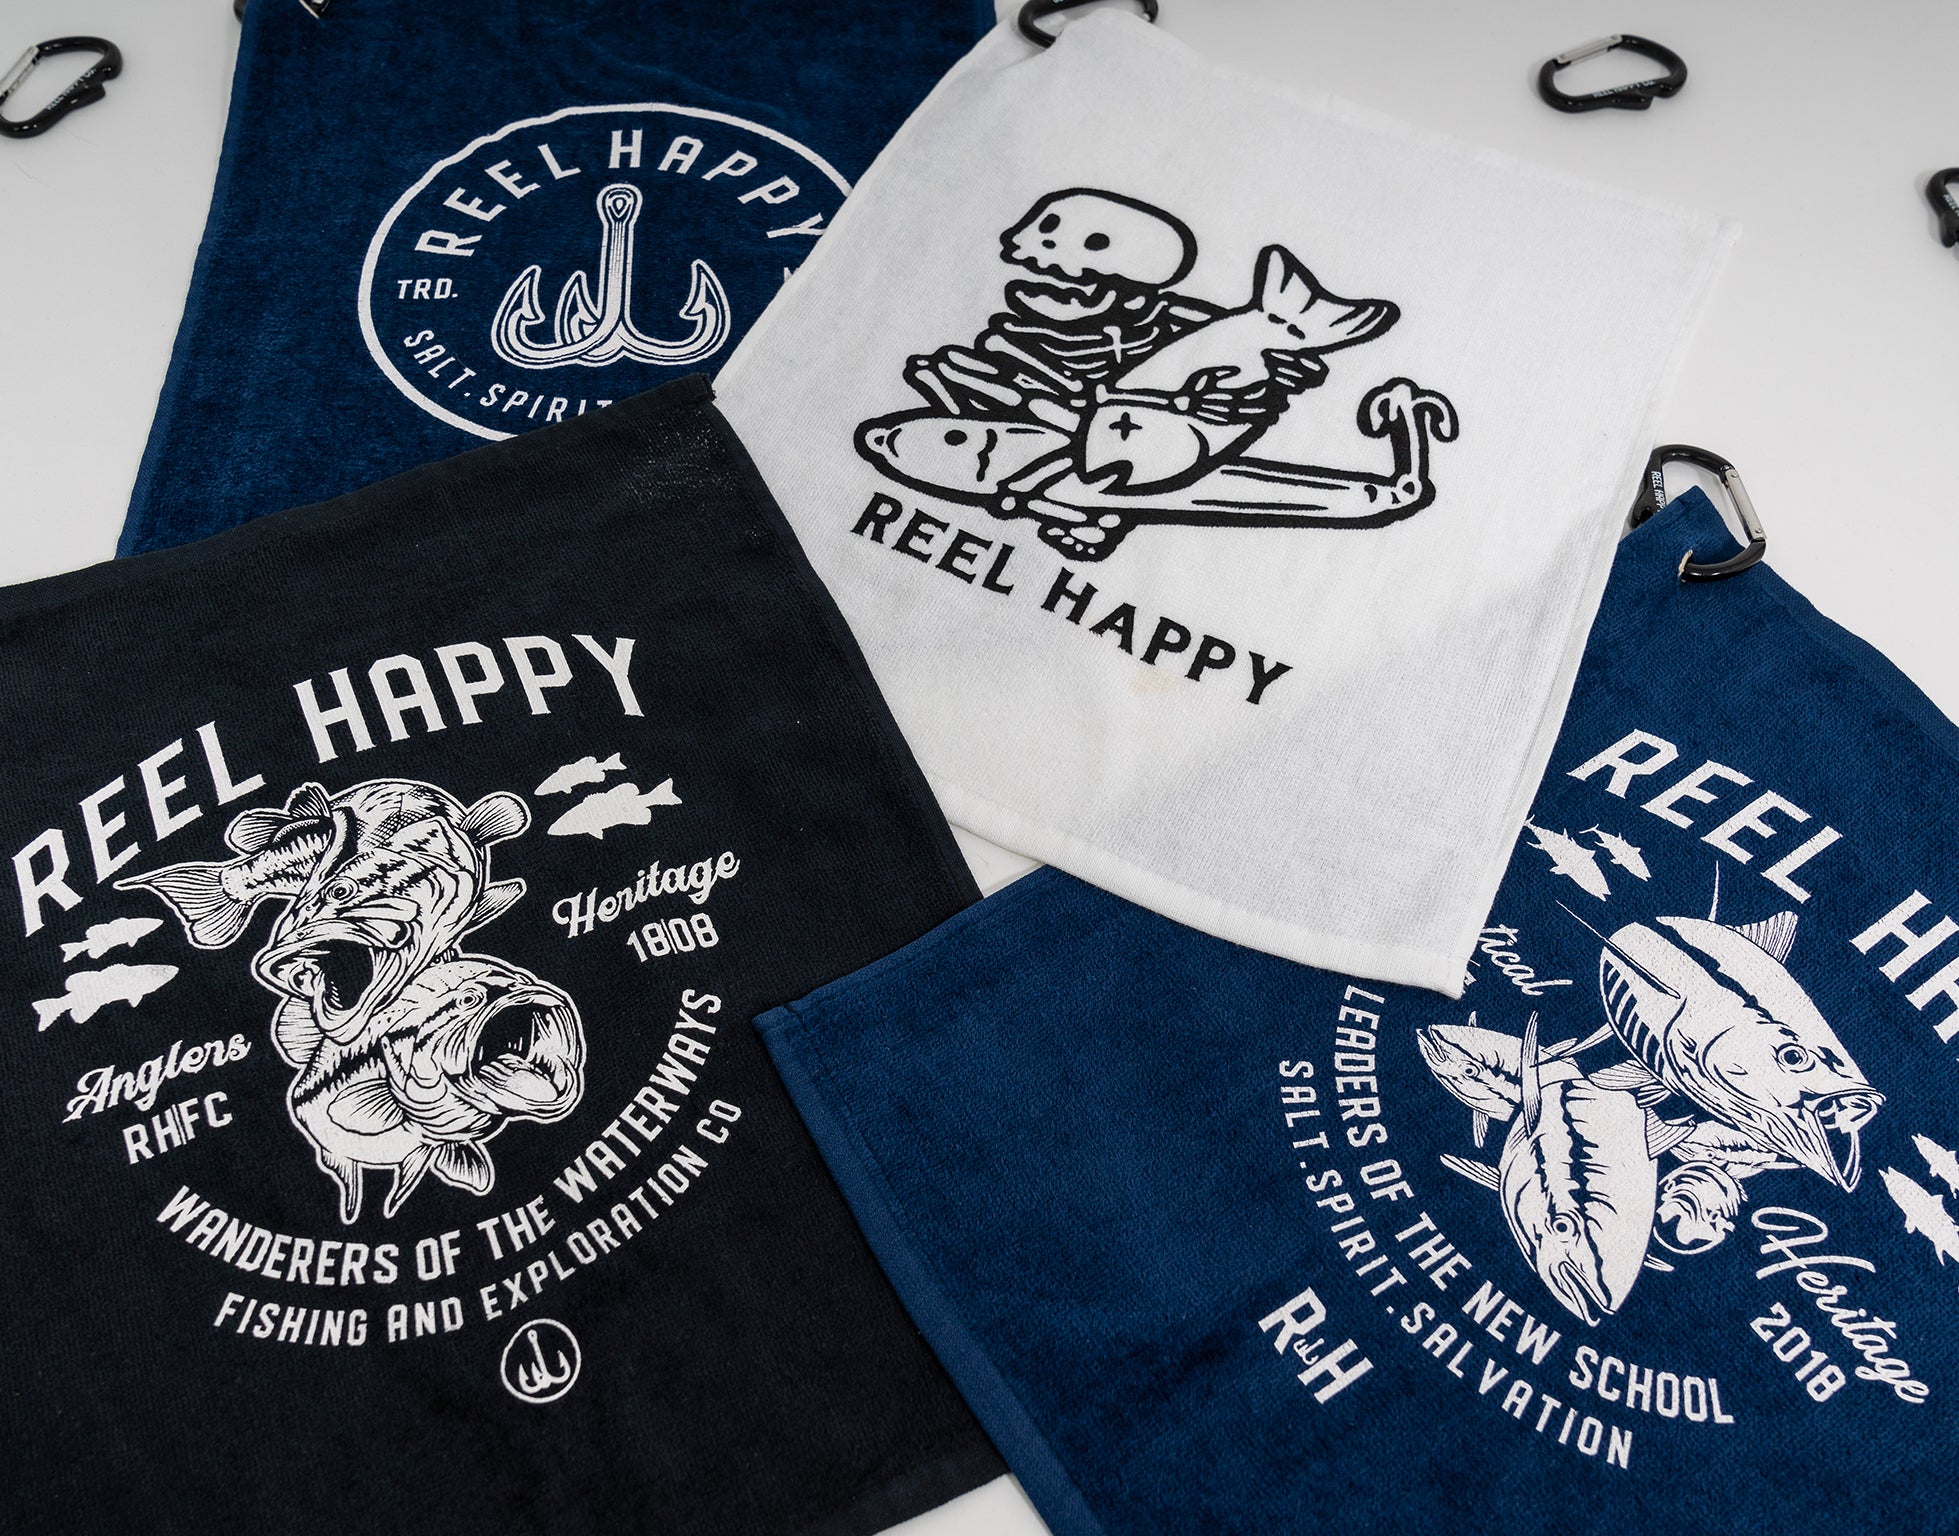 True School Towel - Navy - Reel Happy Co